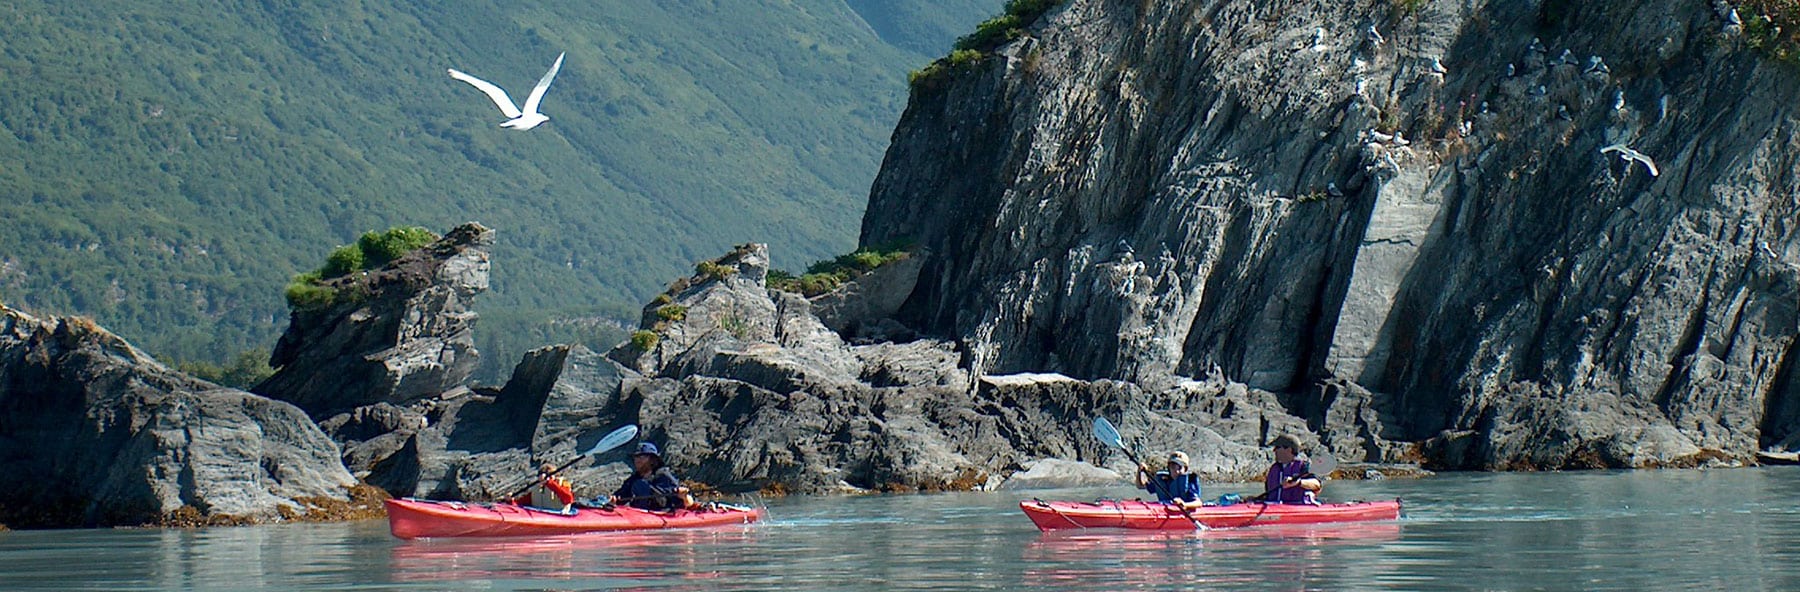 Kayakers enjoying Prince William Sound.